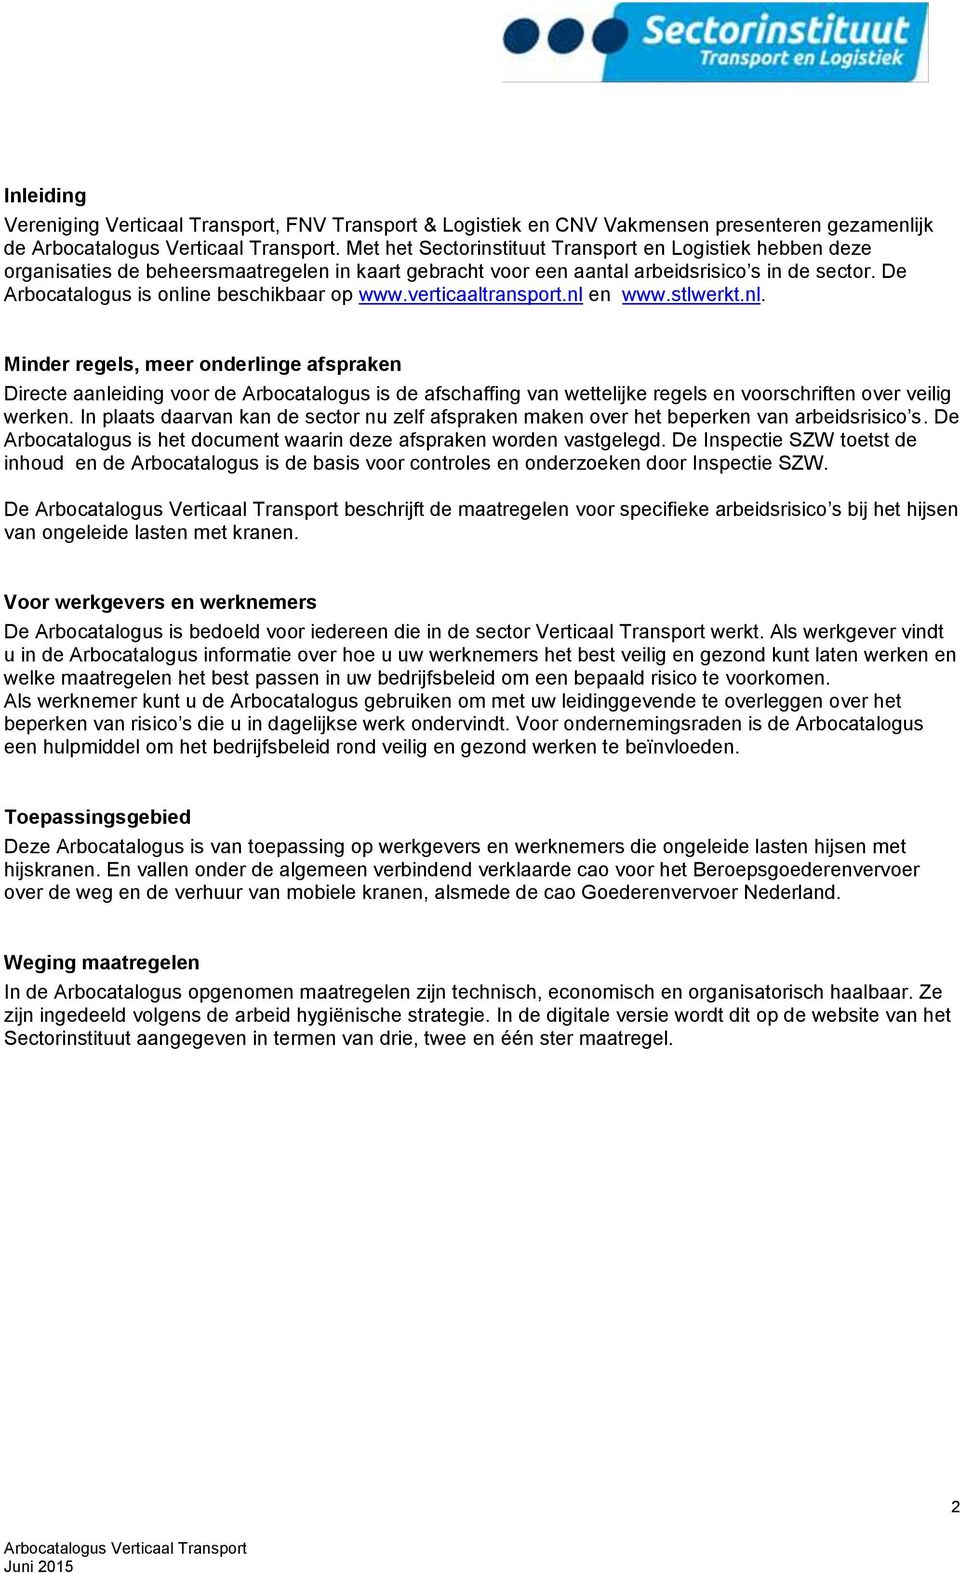 De Arbocatalogus is online beschikbaar op www.verticaaltransport.nl en www.stlwerkt.nl. Minder regels, meer onderlinge afspraken Directe aanleiding voor de Arbocatalogus is de afschaffing van wettelijke regels en voorschriften over veilig werken.